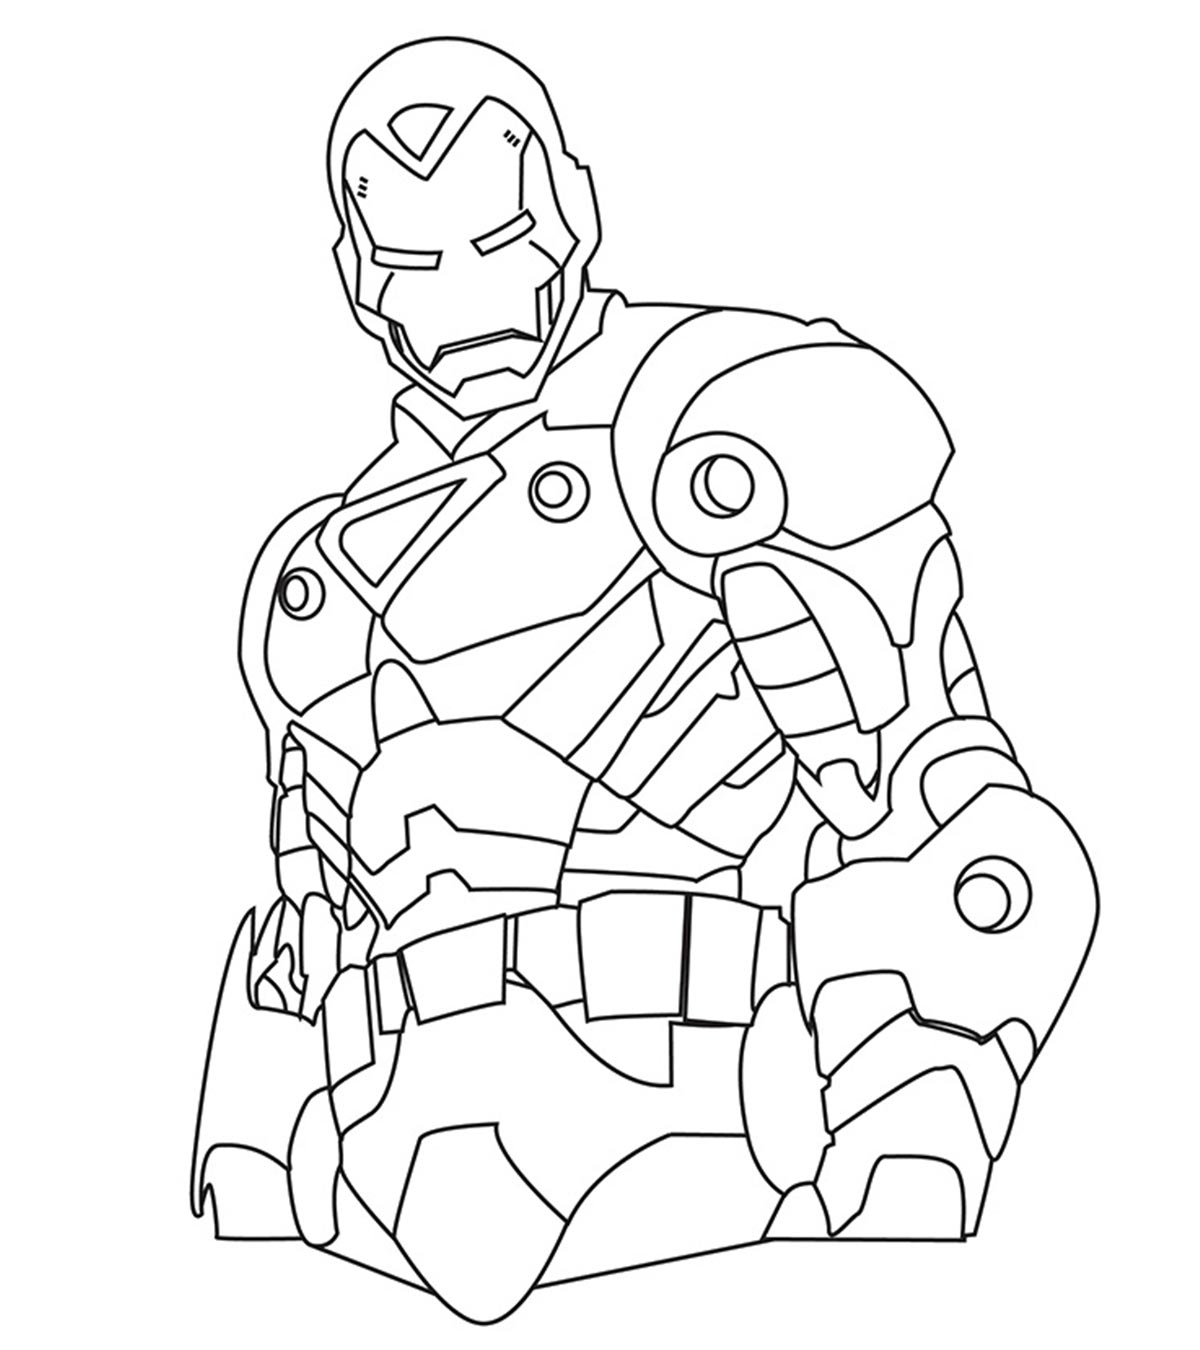 Tổng hợp 20 mẫu tranh tô màu người sắt Iron Man mới nhất cho bé tập tô